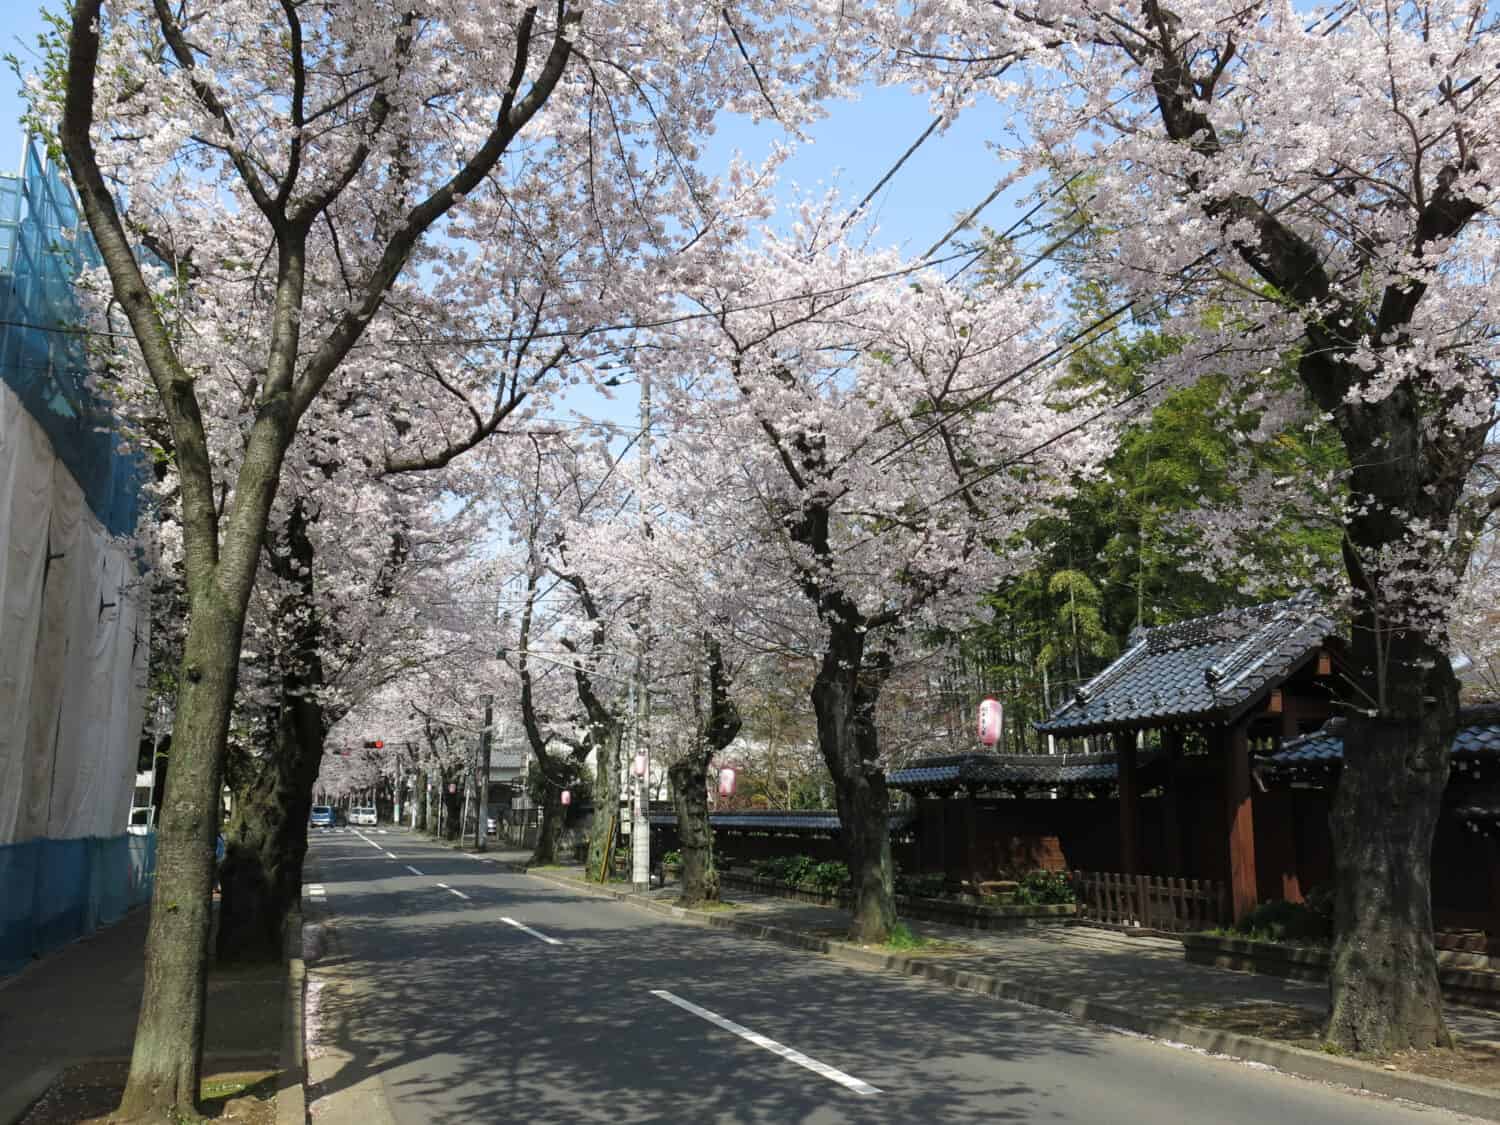 Tokiwadaira Cherry Blossom Promenade where cherry blossoms (sakura) are in full bloom, Matsudo City, Chiba, Japan